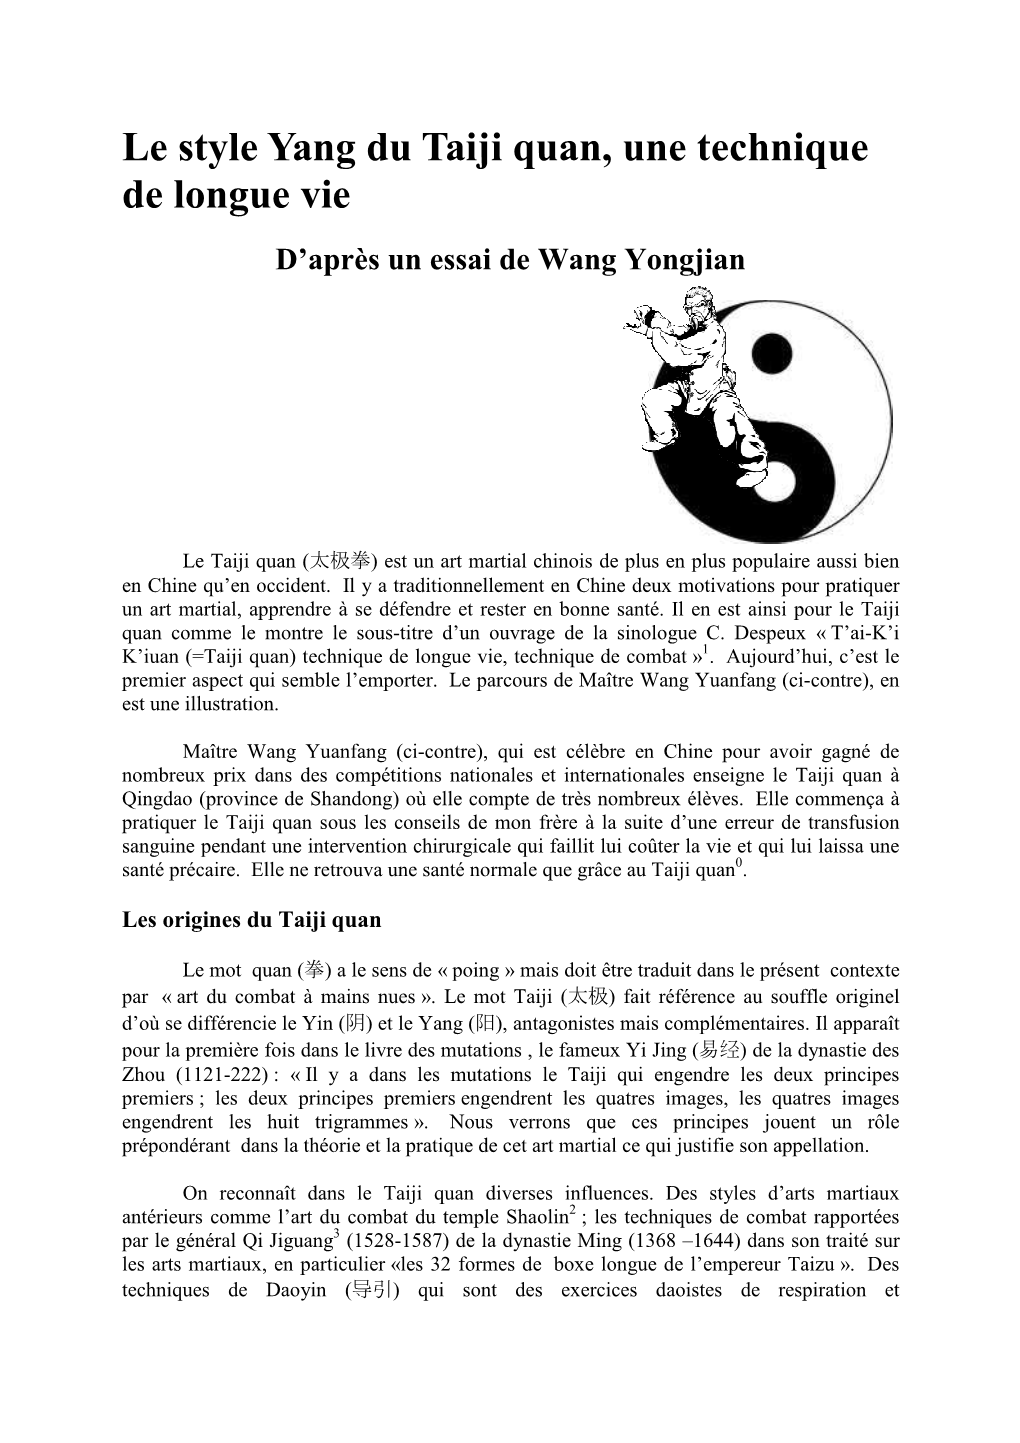 Le Style Yang Du Taiji Quan, Une Technique De Longue Vie D’Après Un Essai De Wang Yongjian